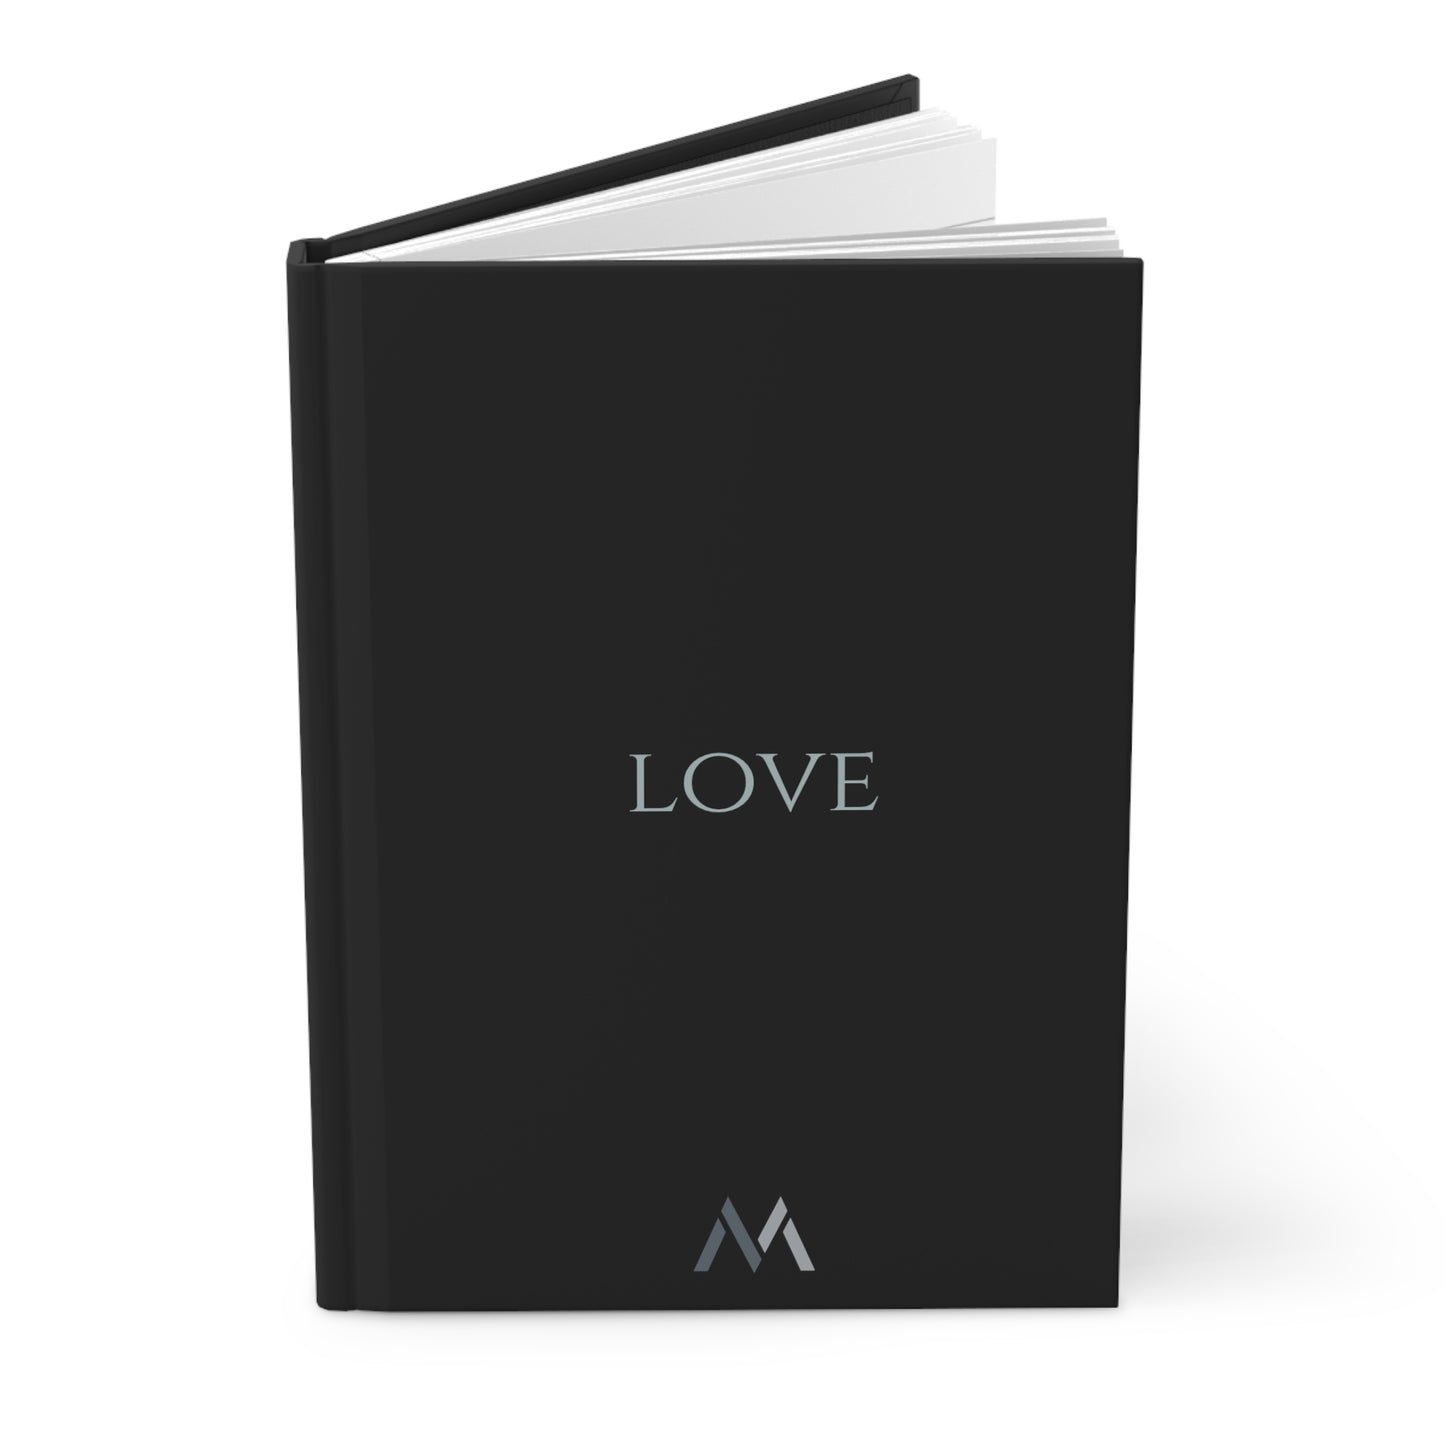 "LOVE" Hard Cover Matte Black Journal